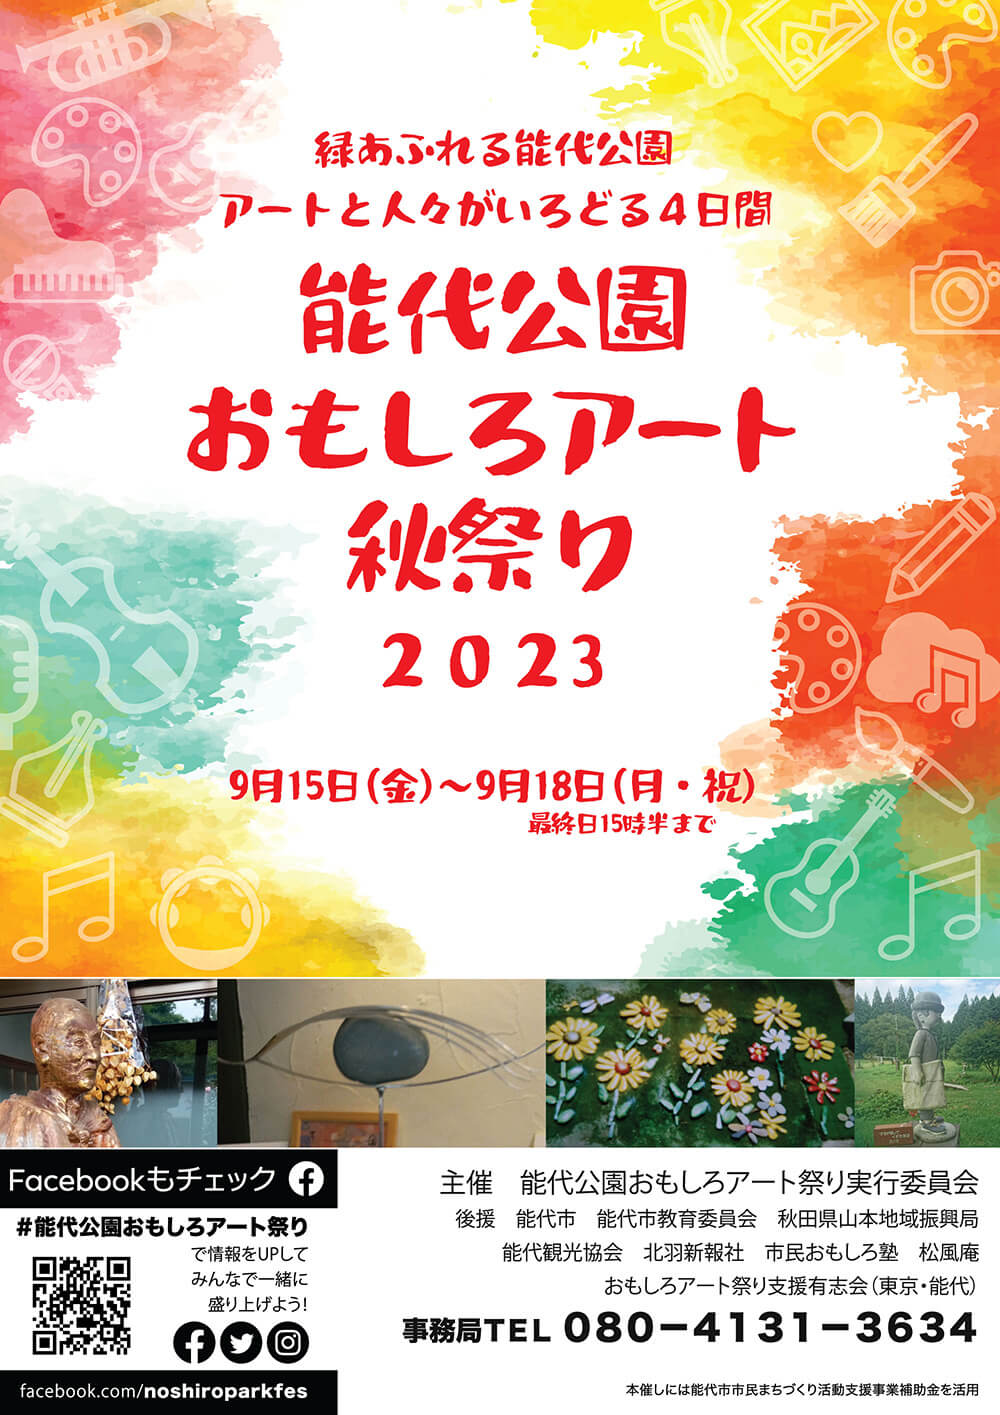 2023 能代公園おもしろアート秋祭り チラシ表